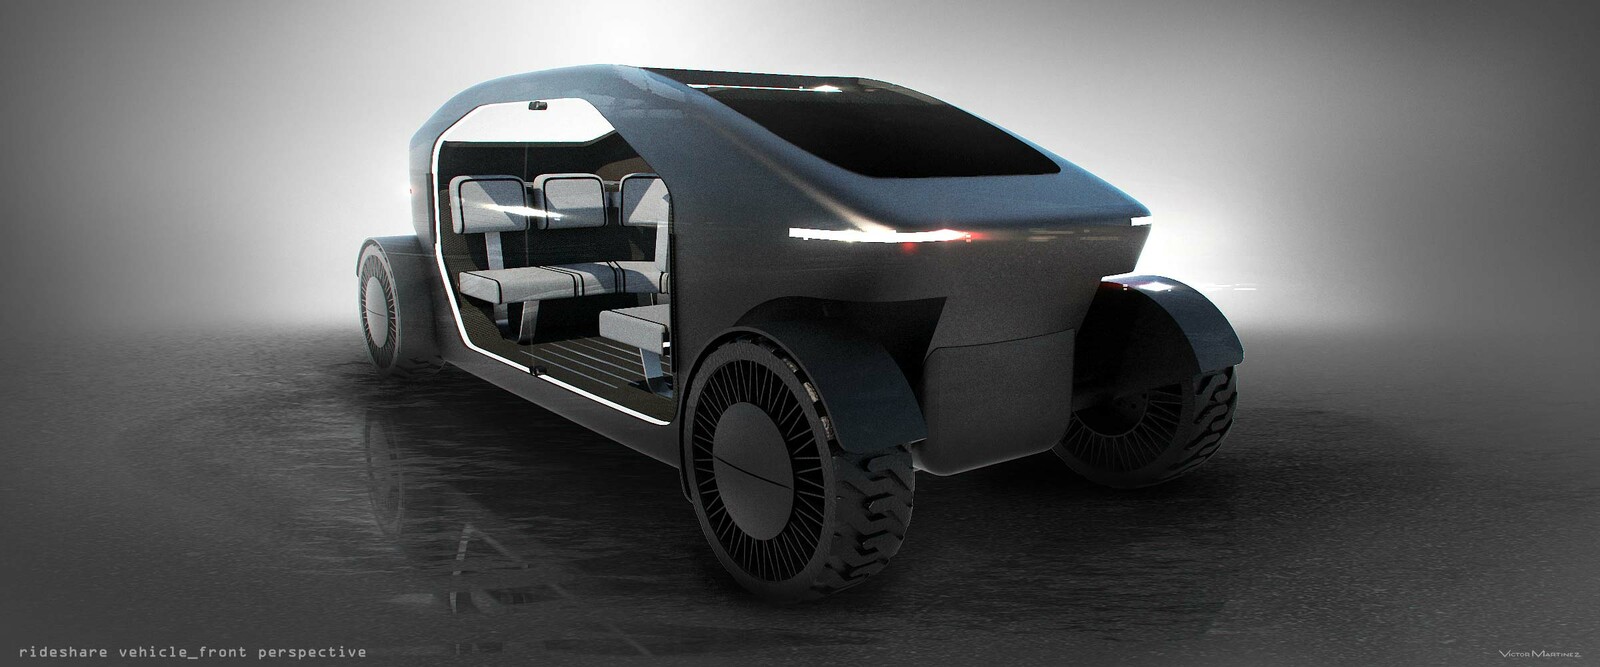 Victor Martinez Westworld Autonomous Rideshare Vehicle designed by